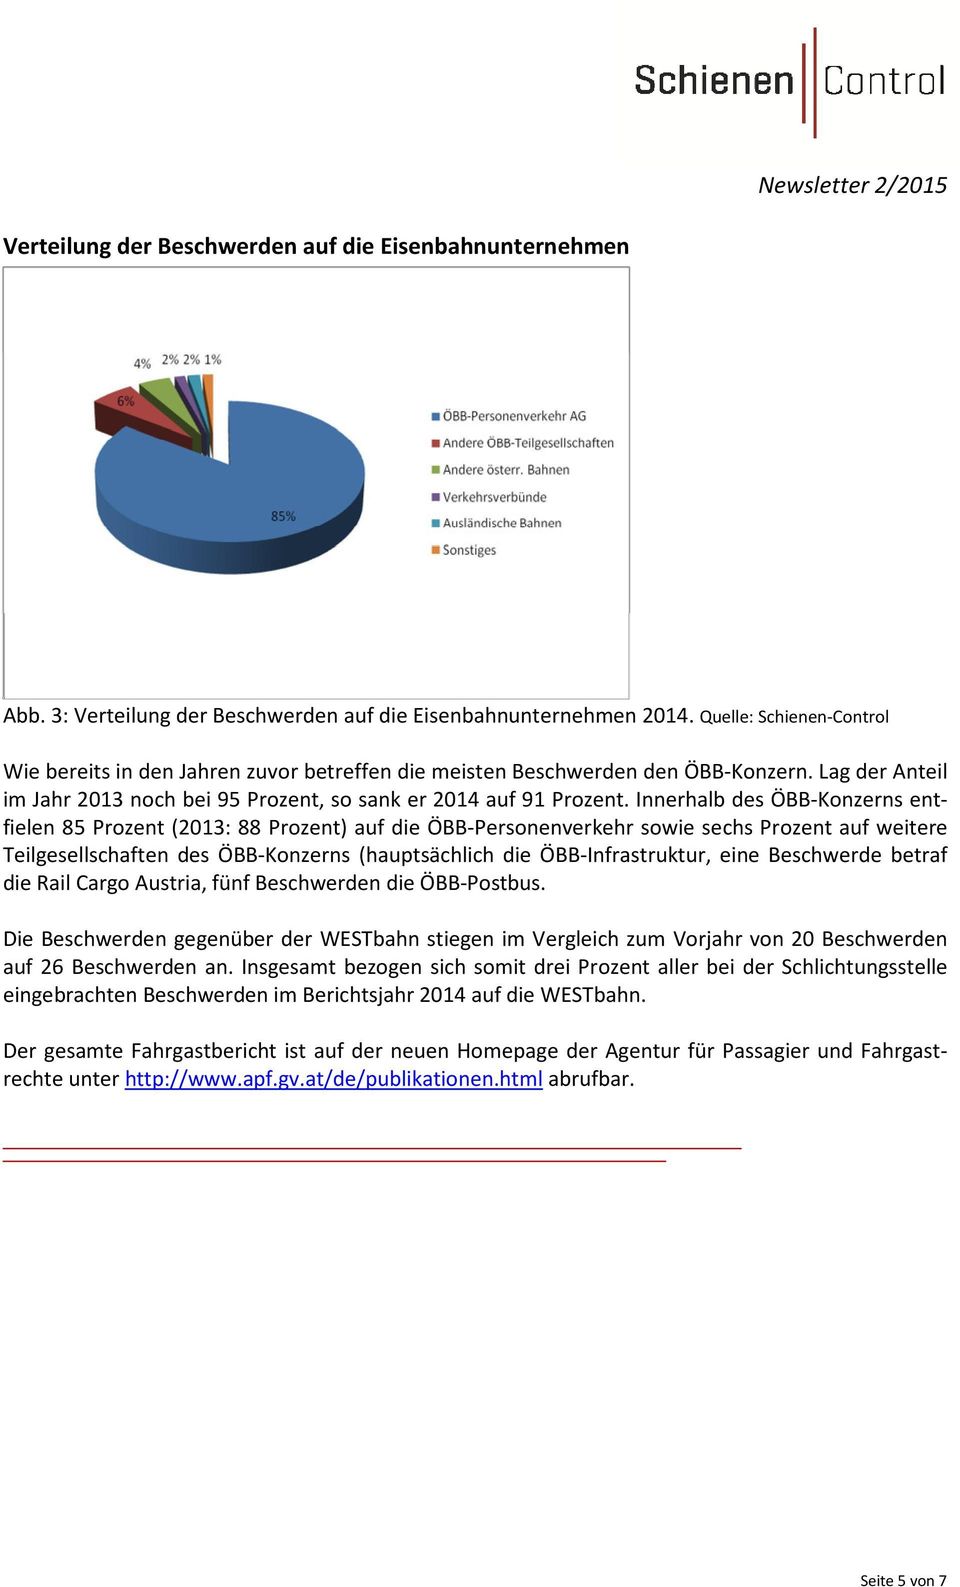 Innerhalb des ÖBB-Konzerns entfielen 85 Prozent (2013: 88 Prozent) auf die ÖBB-Personenverkehr sowie sechs Prozent auf weitere Teilgesellschaften des ÖBB-Konzerns (hauptsächlich die